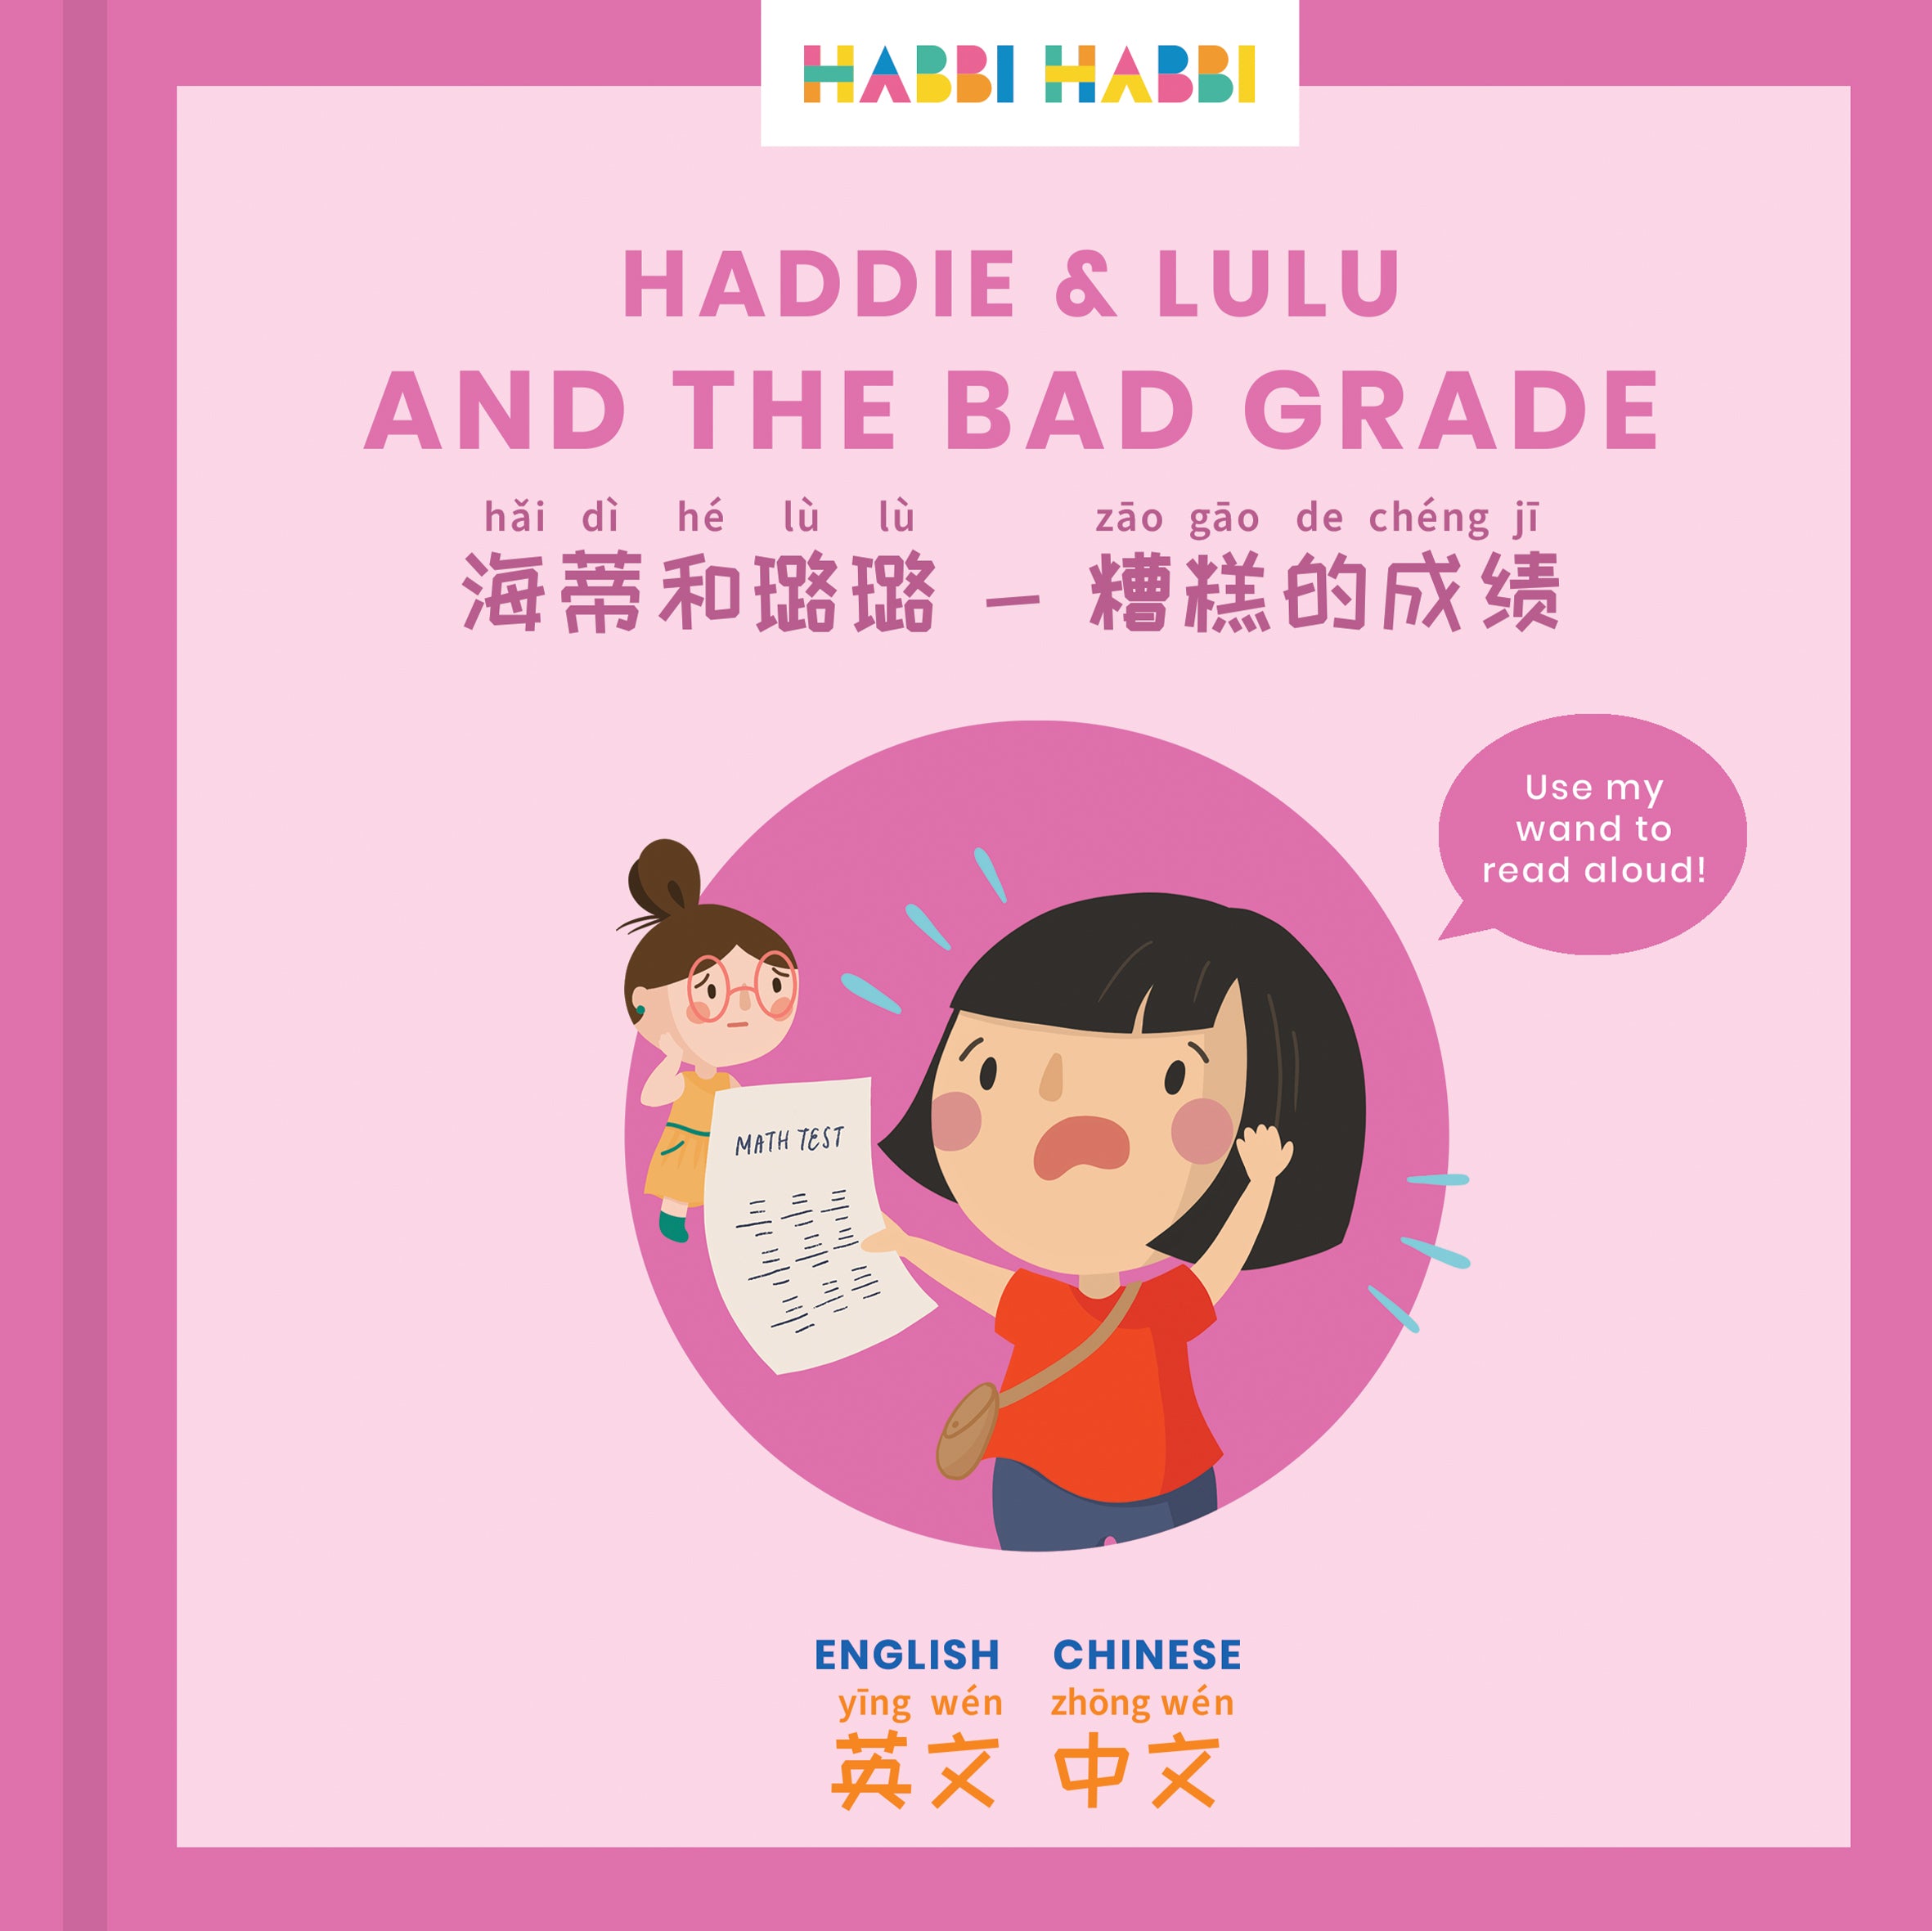 Stories For Kids In Chinese Spanish Haddie Lulu And The Bad Grade Habbi Habbi